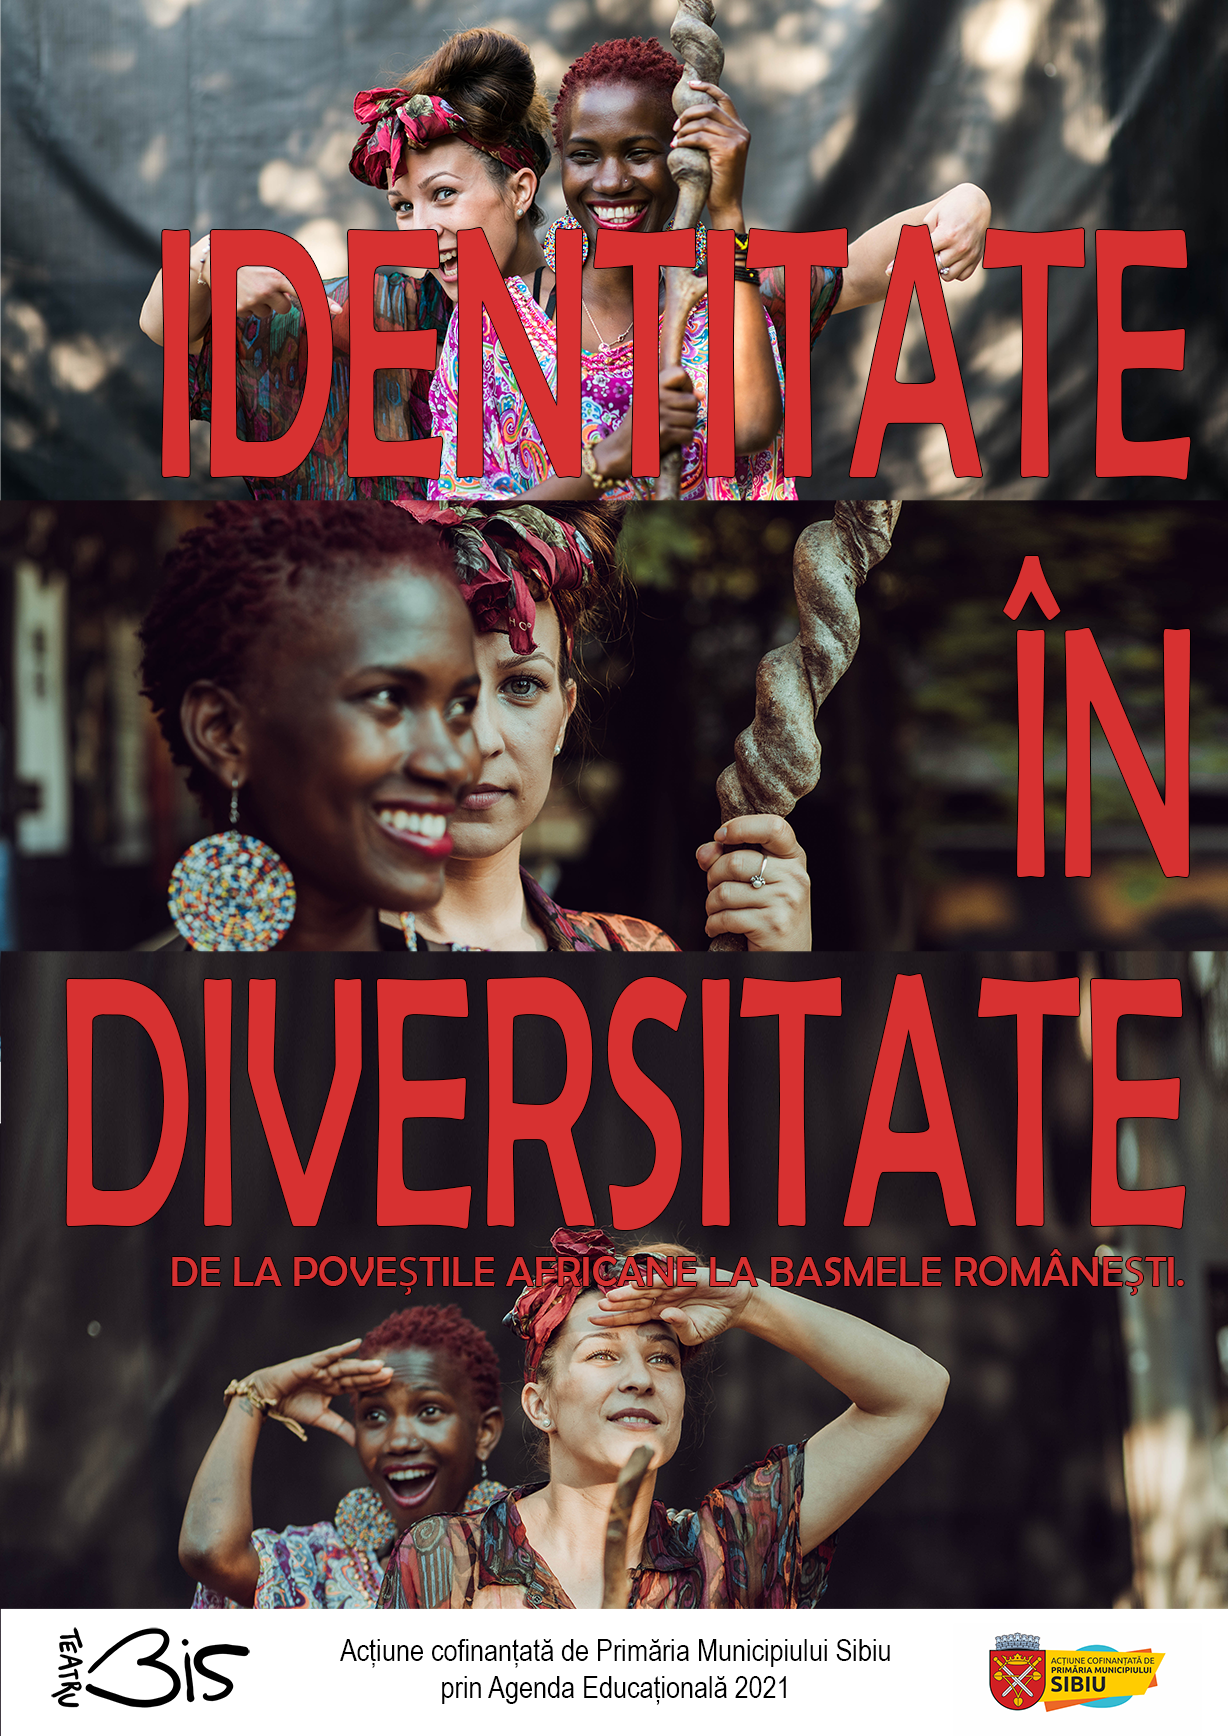 Identitate în diversitate. De la poveștile africane la basmele românești.